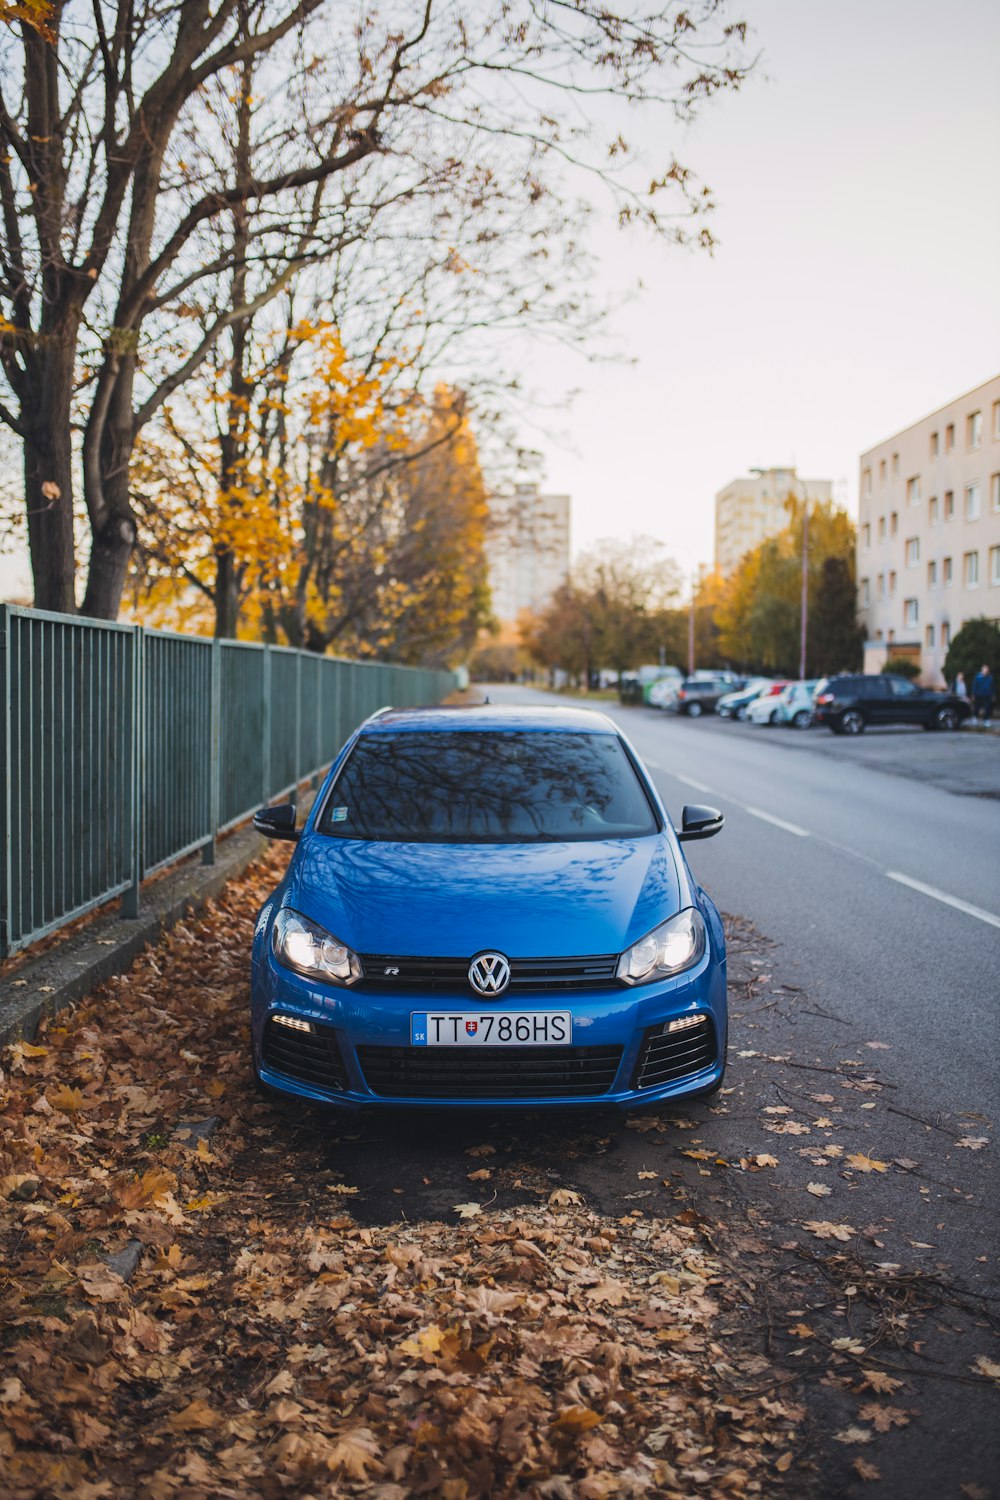 blue Volkswagen vehicle on asphalt road